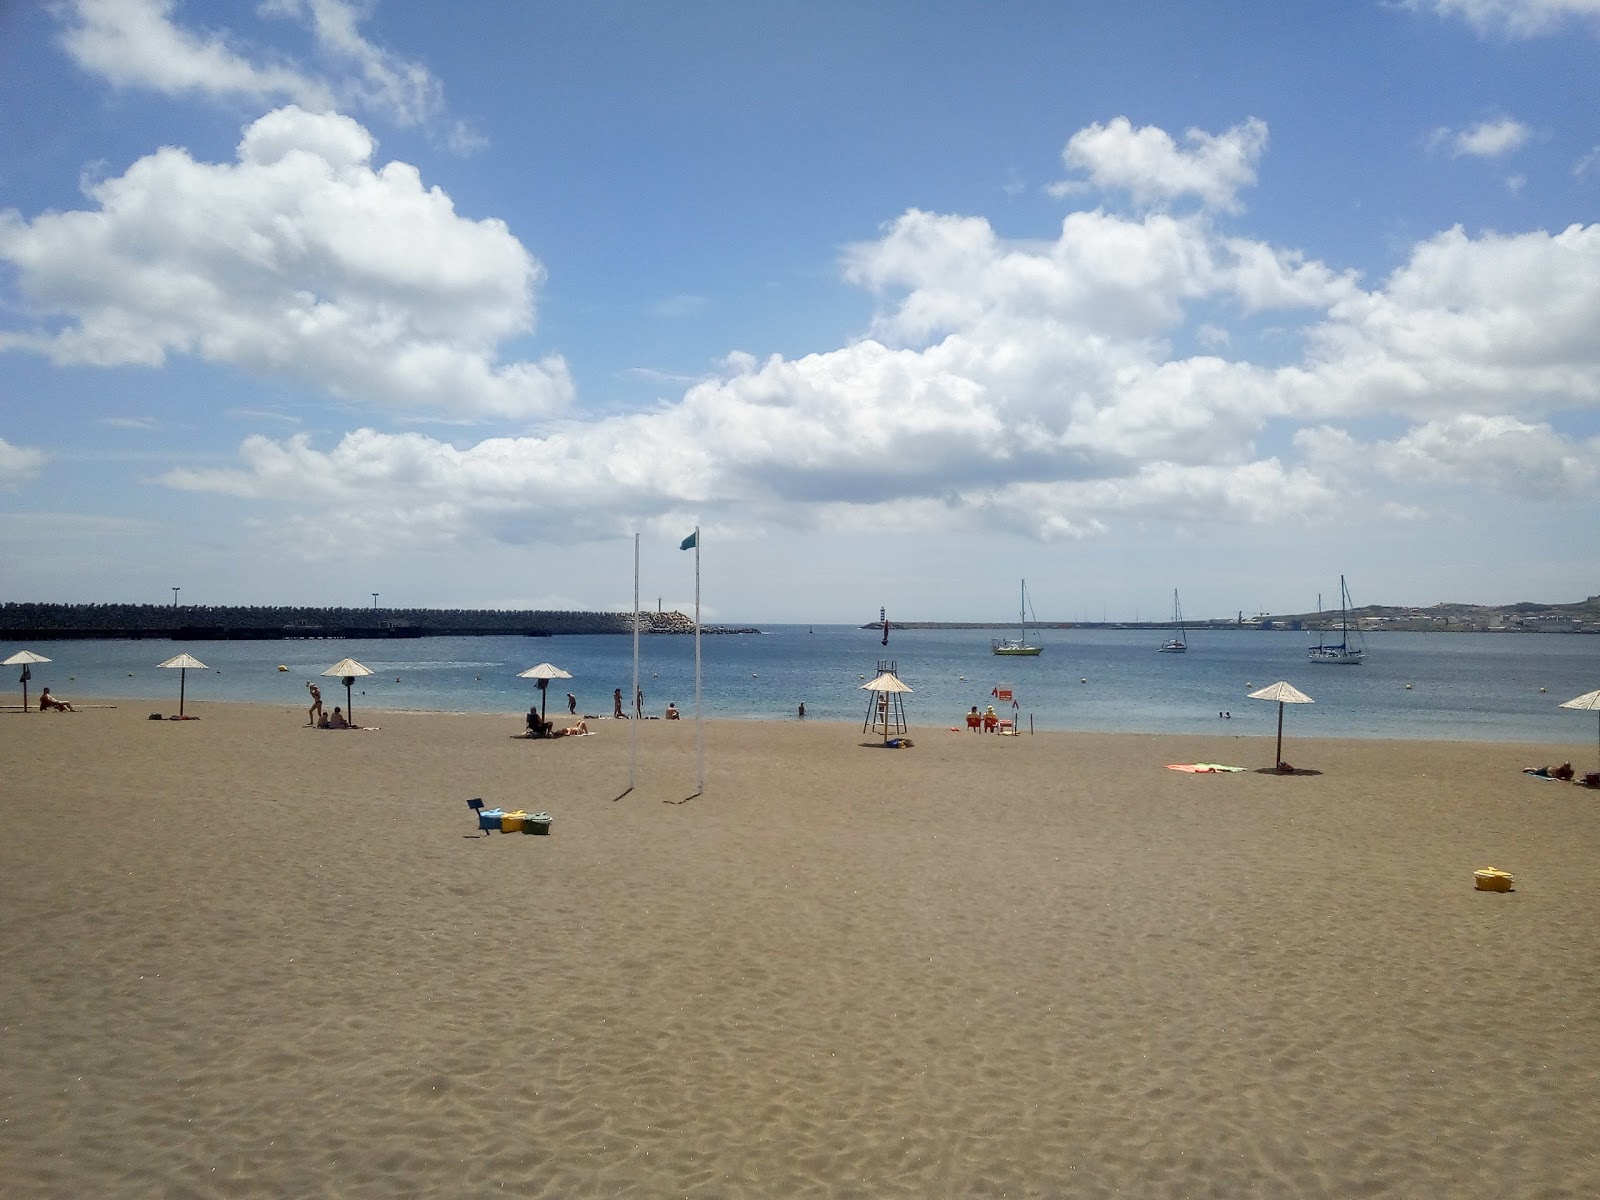 Praia da Vitoria'in fotoğrafı ve yerleşim